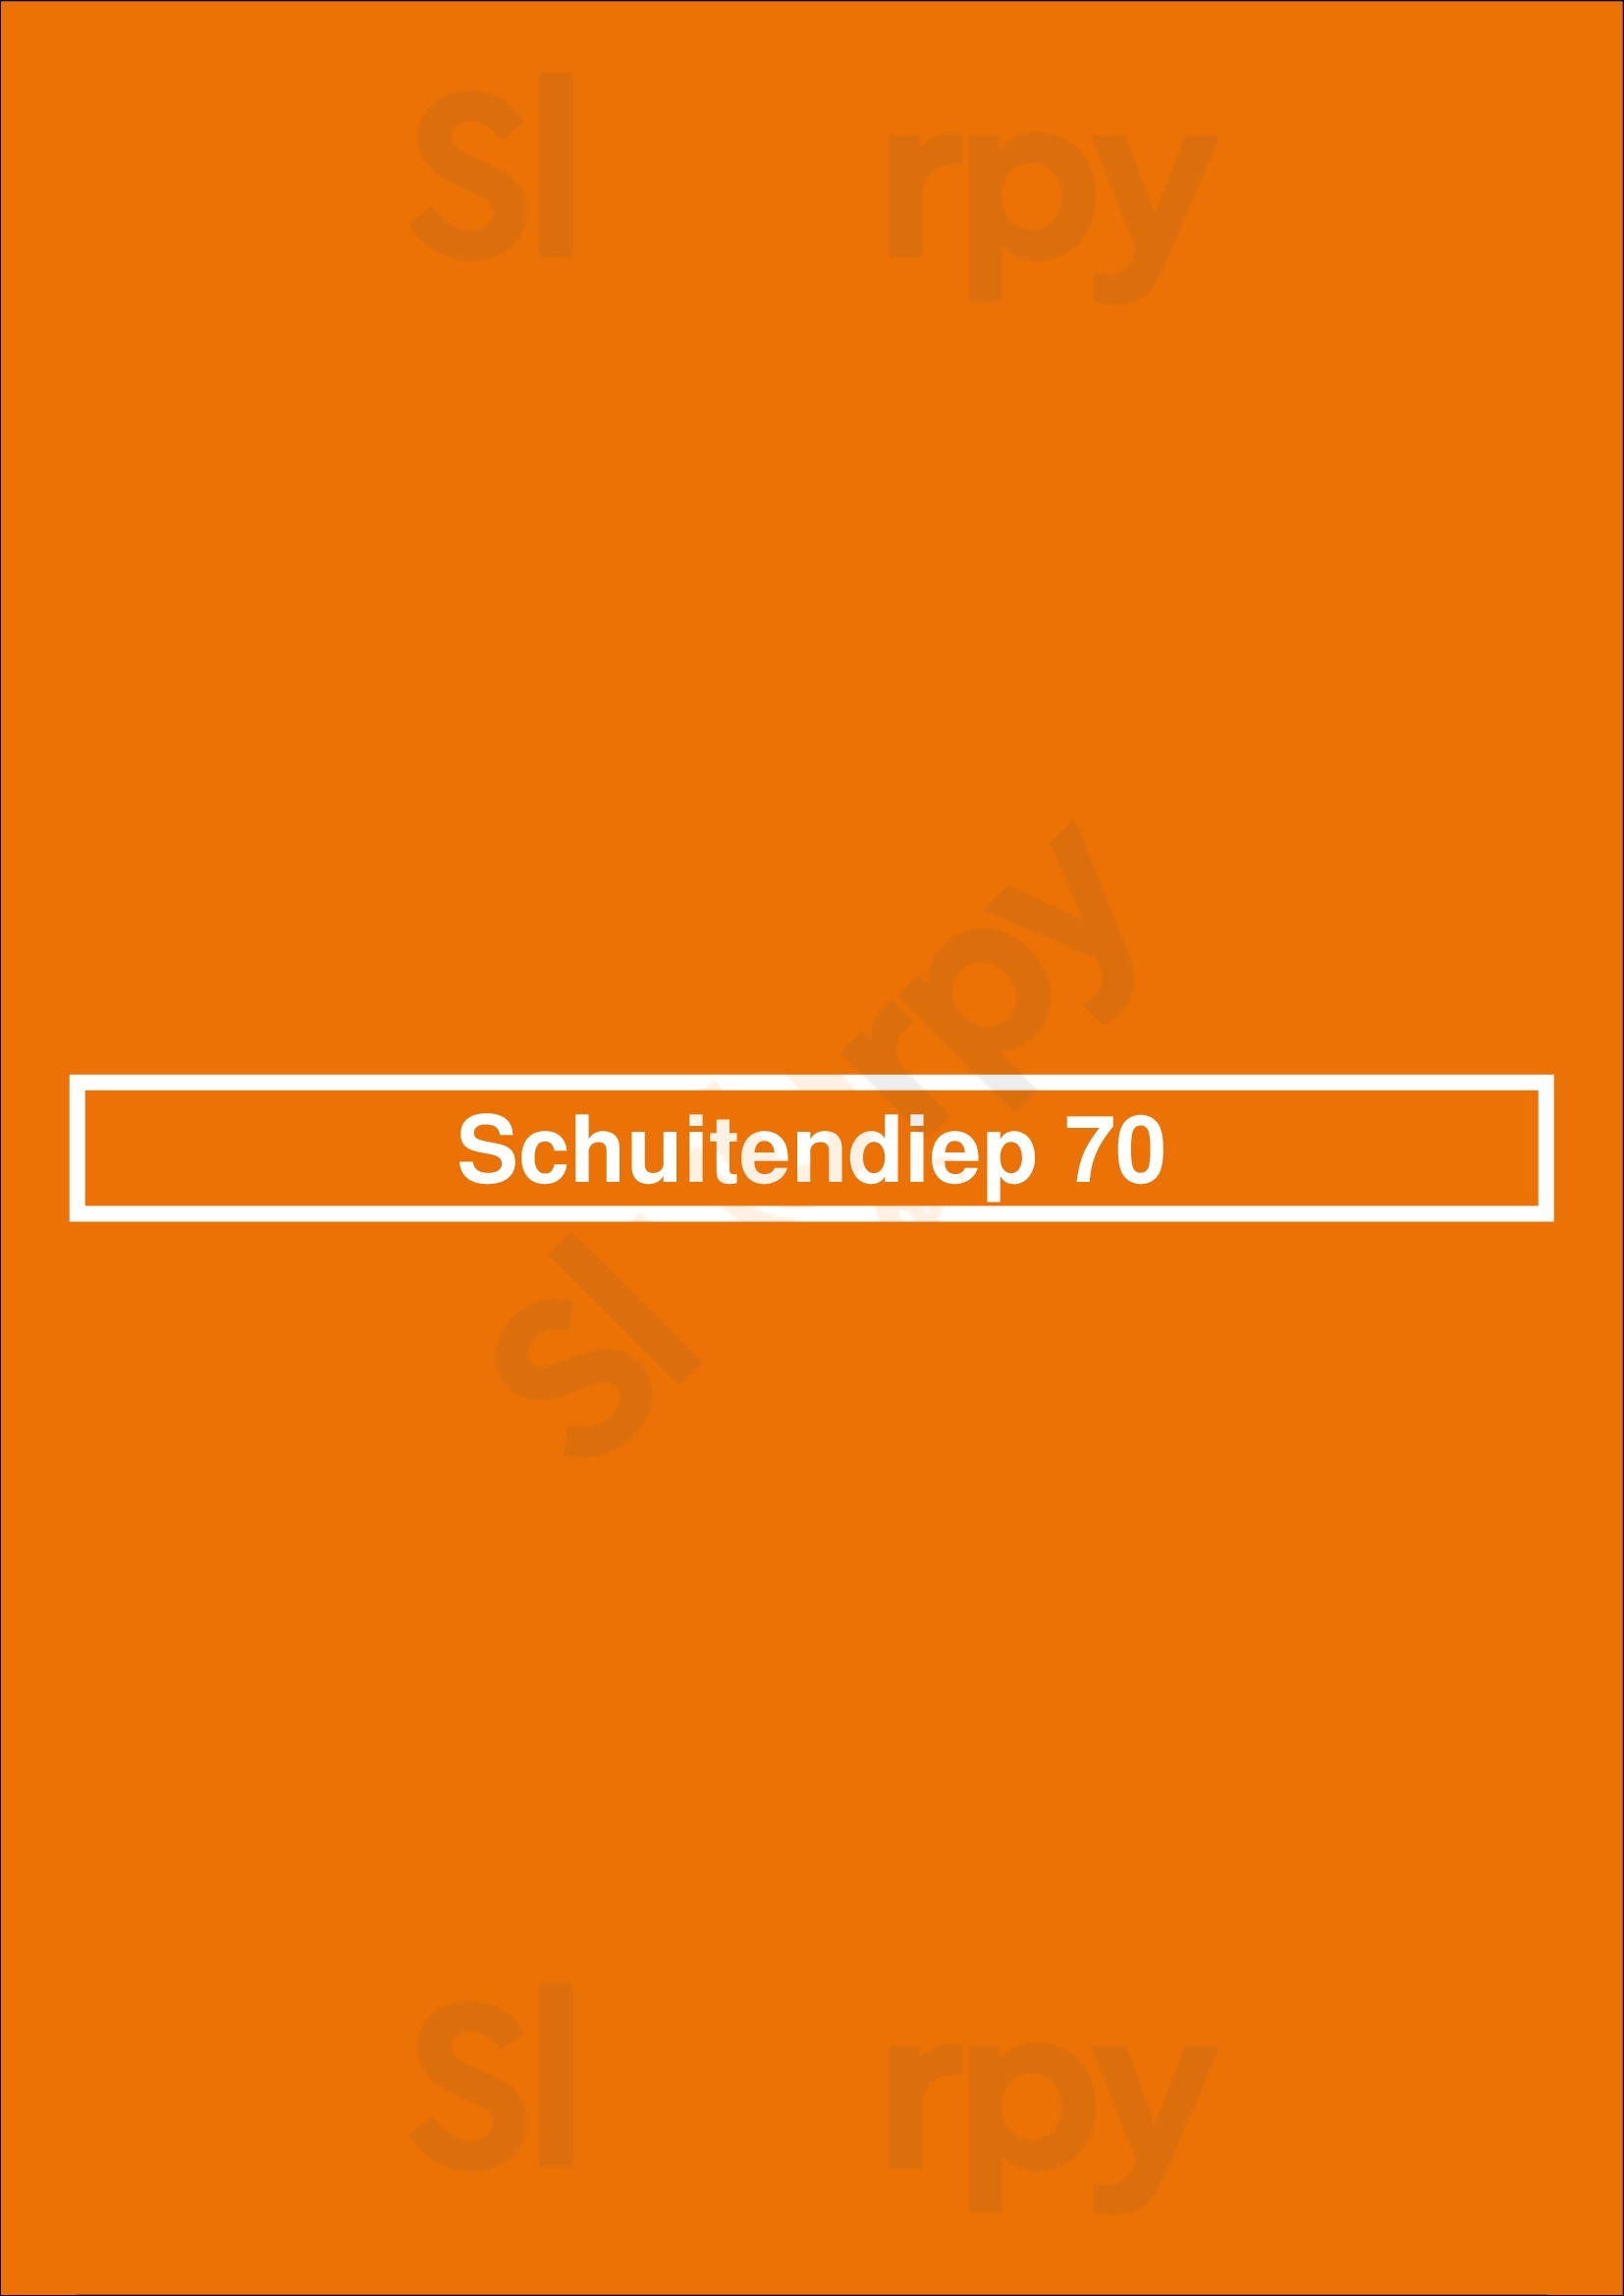 Schuitendiep 70 Groningen Menu - 1